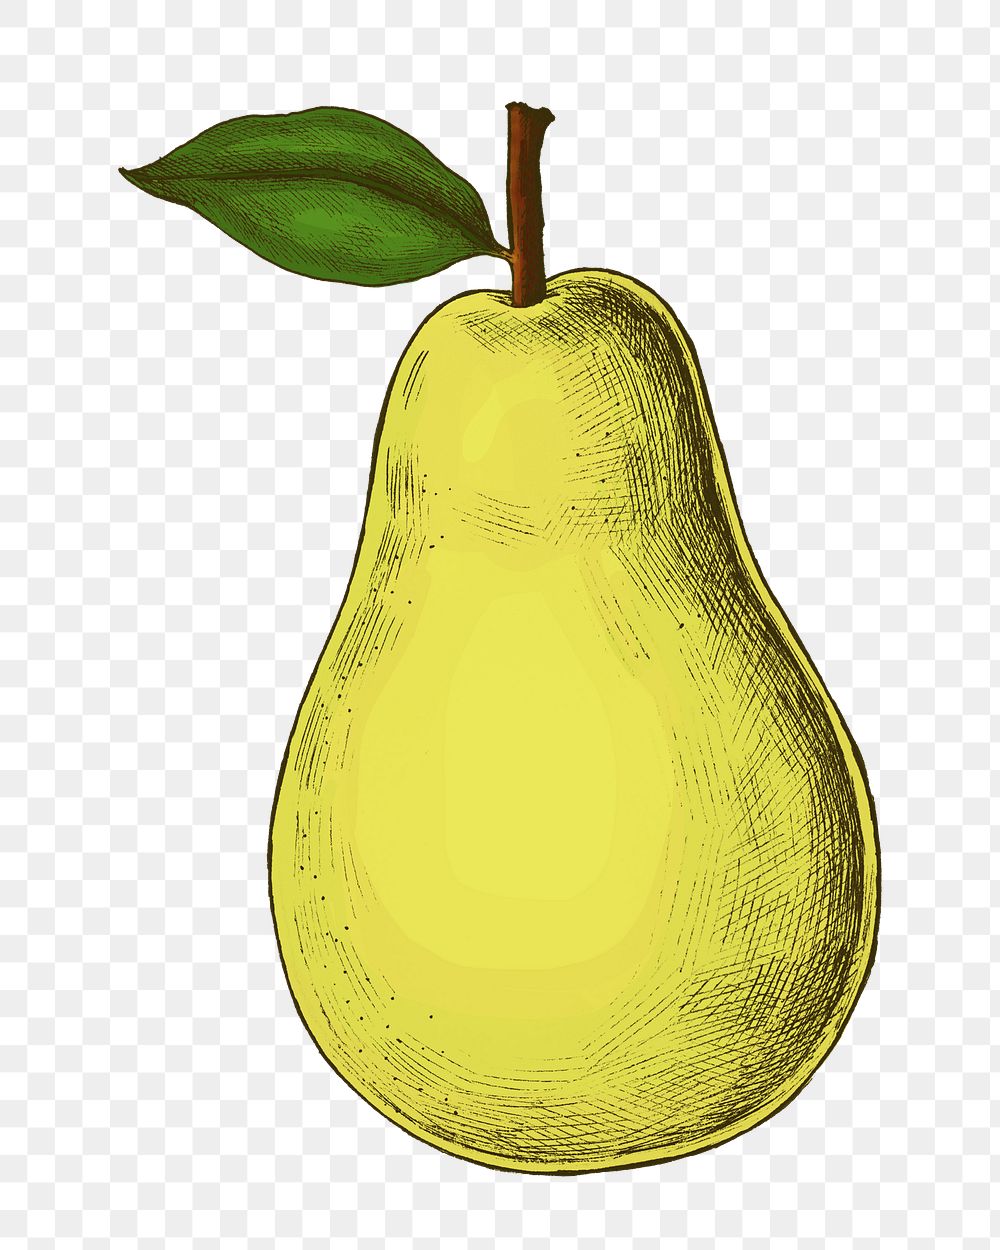 Pear png illustration sticker, fruit design in transparent background